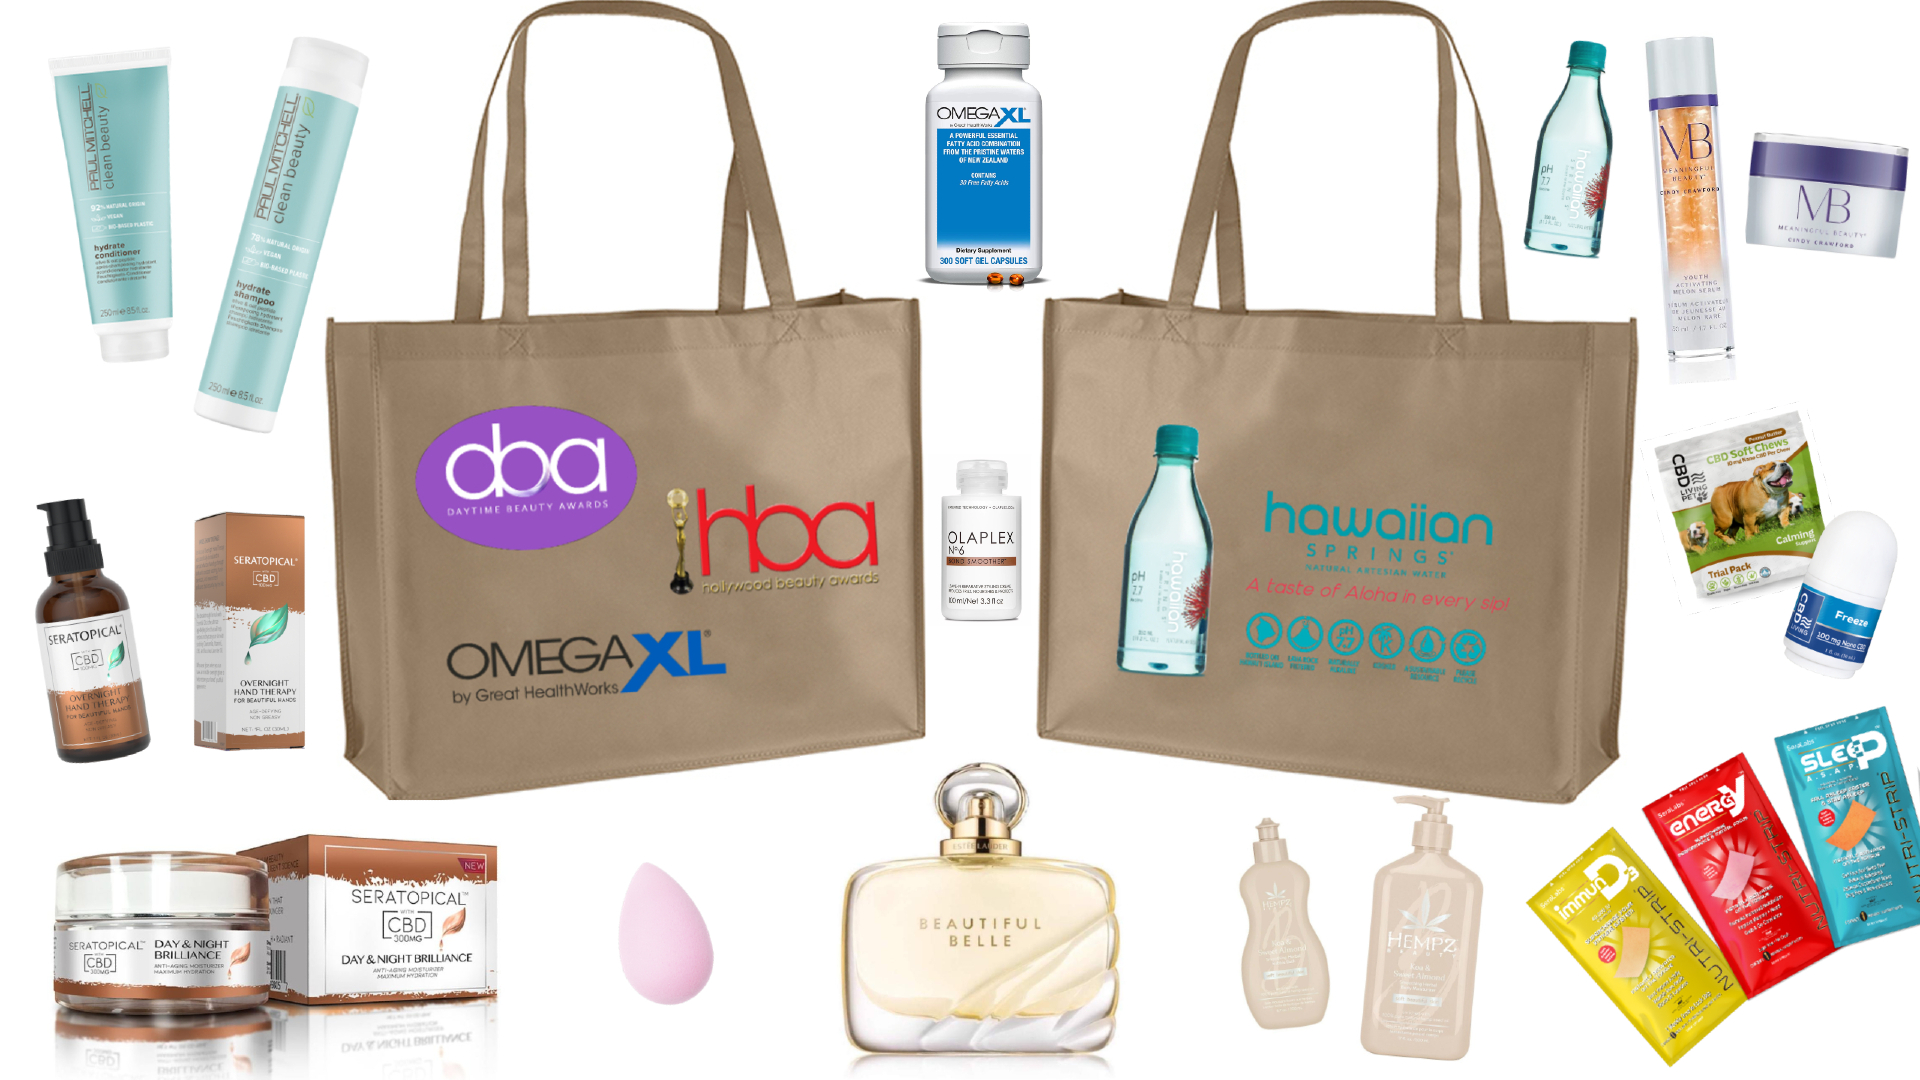 daytime beauty awards gift bag